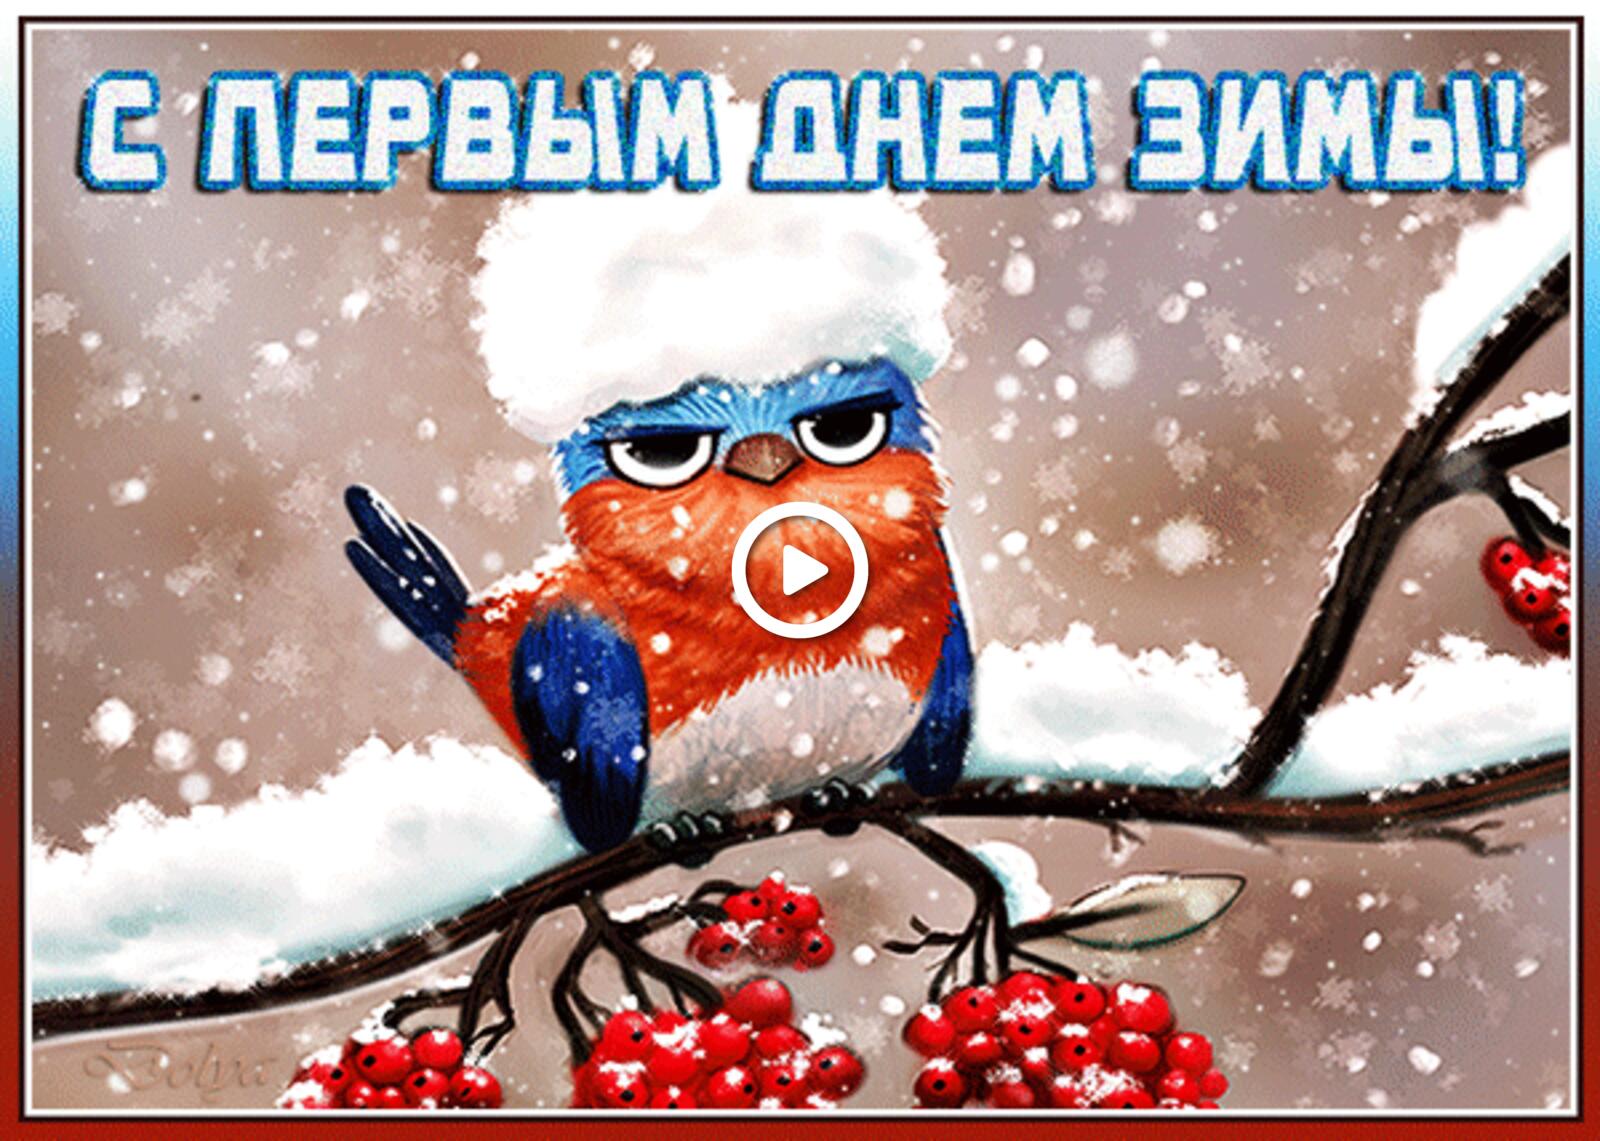 一张以立冬快乐 12月1日是冬季的第一天 冬季为主题的明信片